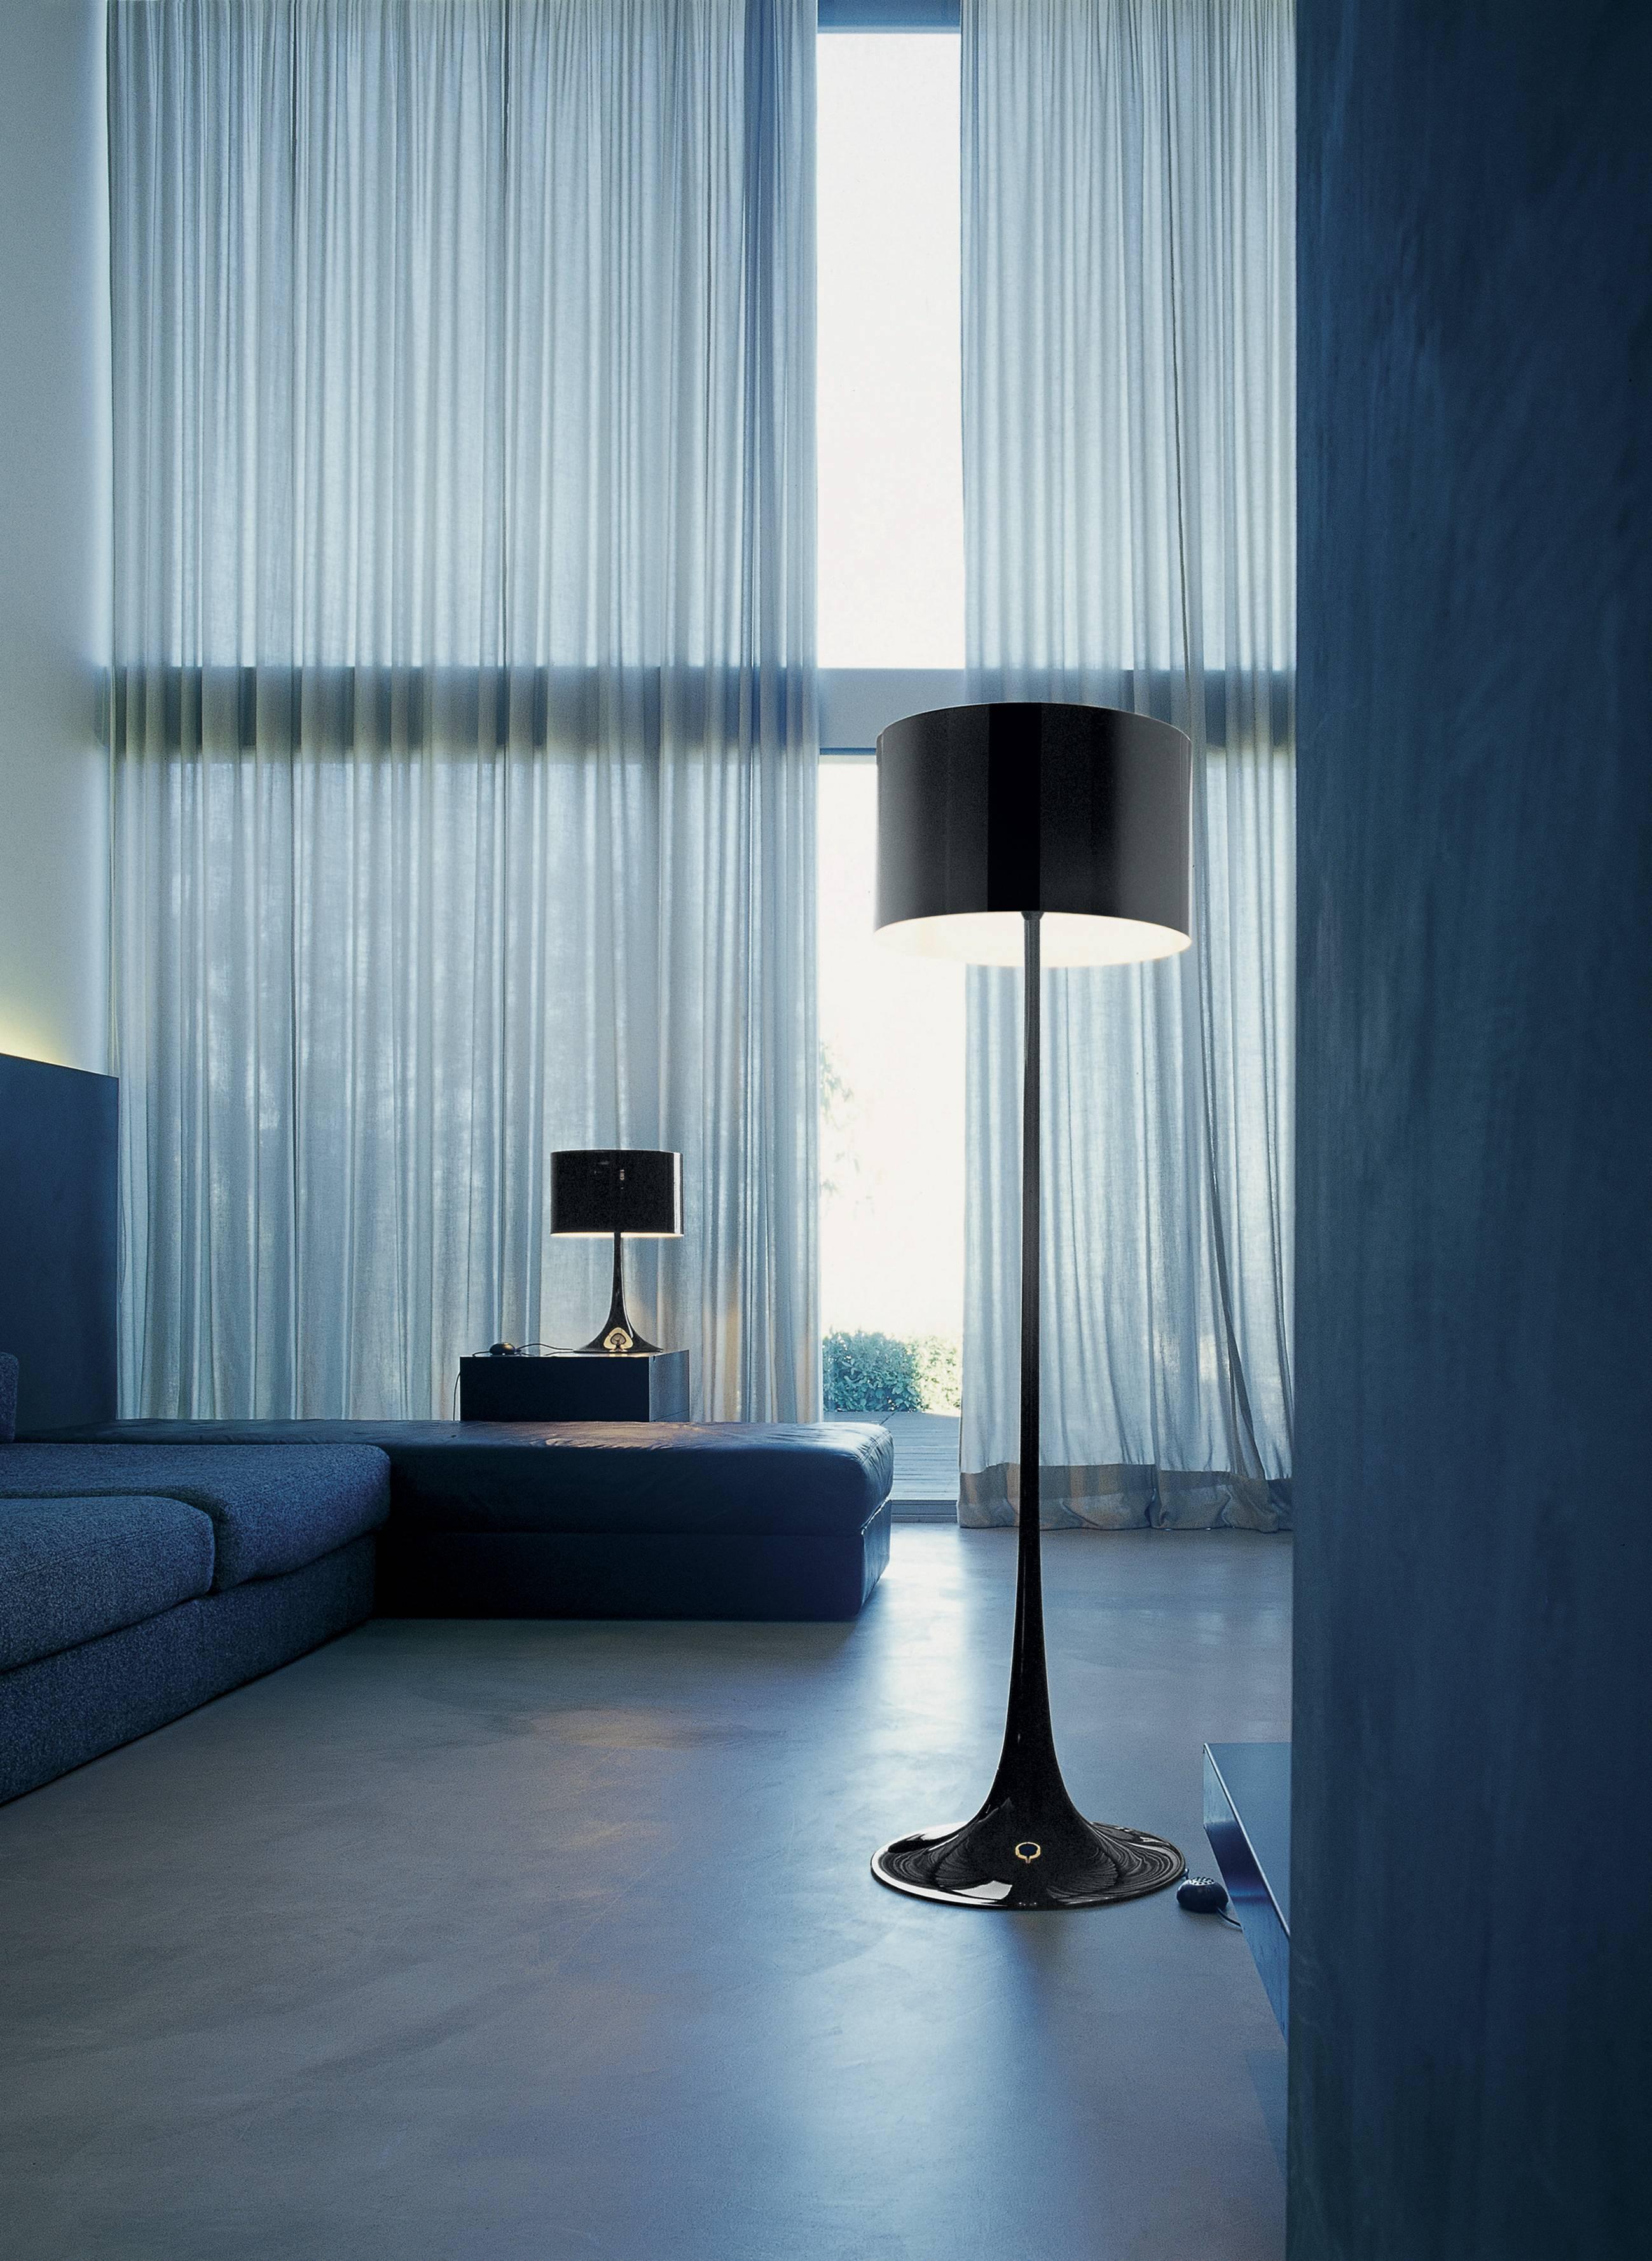 Die 2003 von Sebastian Wrong entworfene Tischleuchte Spun Light-T spiegelt das Beste der modernen Fertigungstechnologie in Kombination mit Eleganz, Handwerkskunst und dynamischer, fließender Ästhetik wider.

Der Hauptkörper besteht aus einem Rahmen